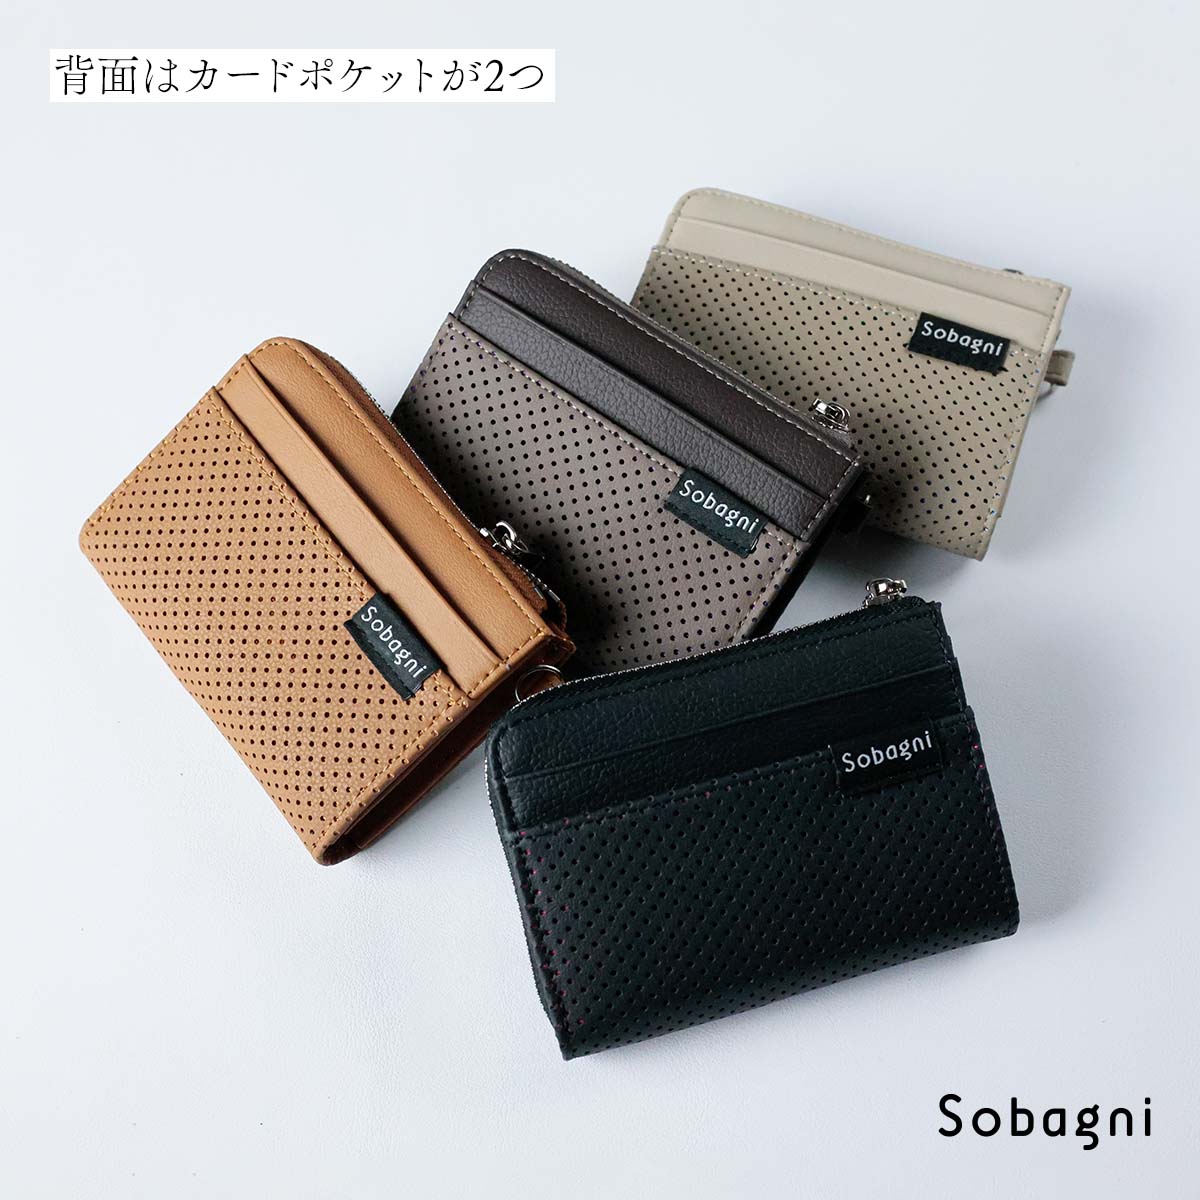 [アブラサス] 小さい財布 メンズ レディース 財布 日本製 本革 ベージュ×カ